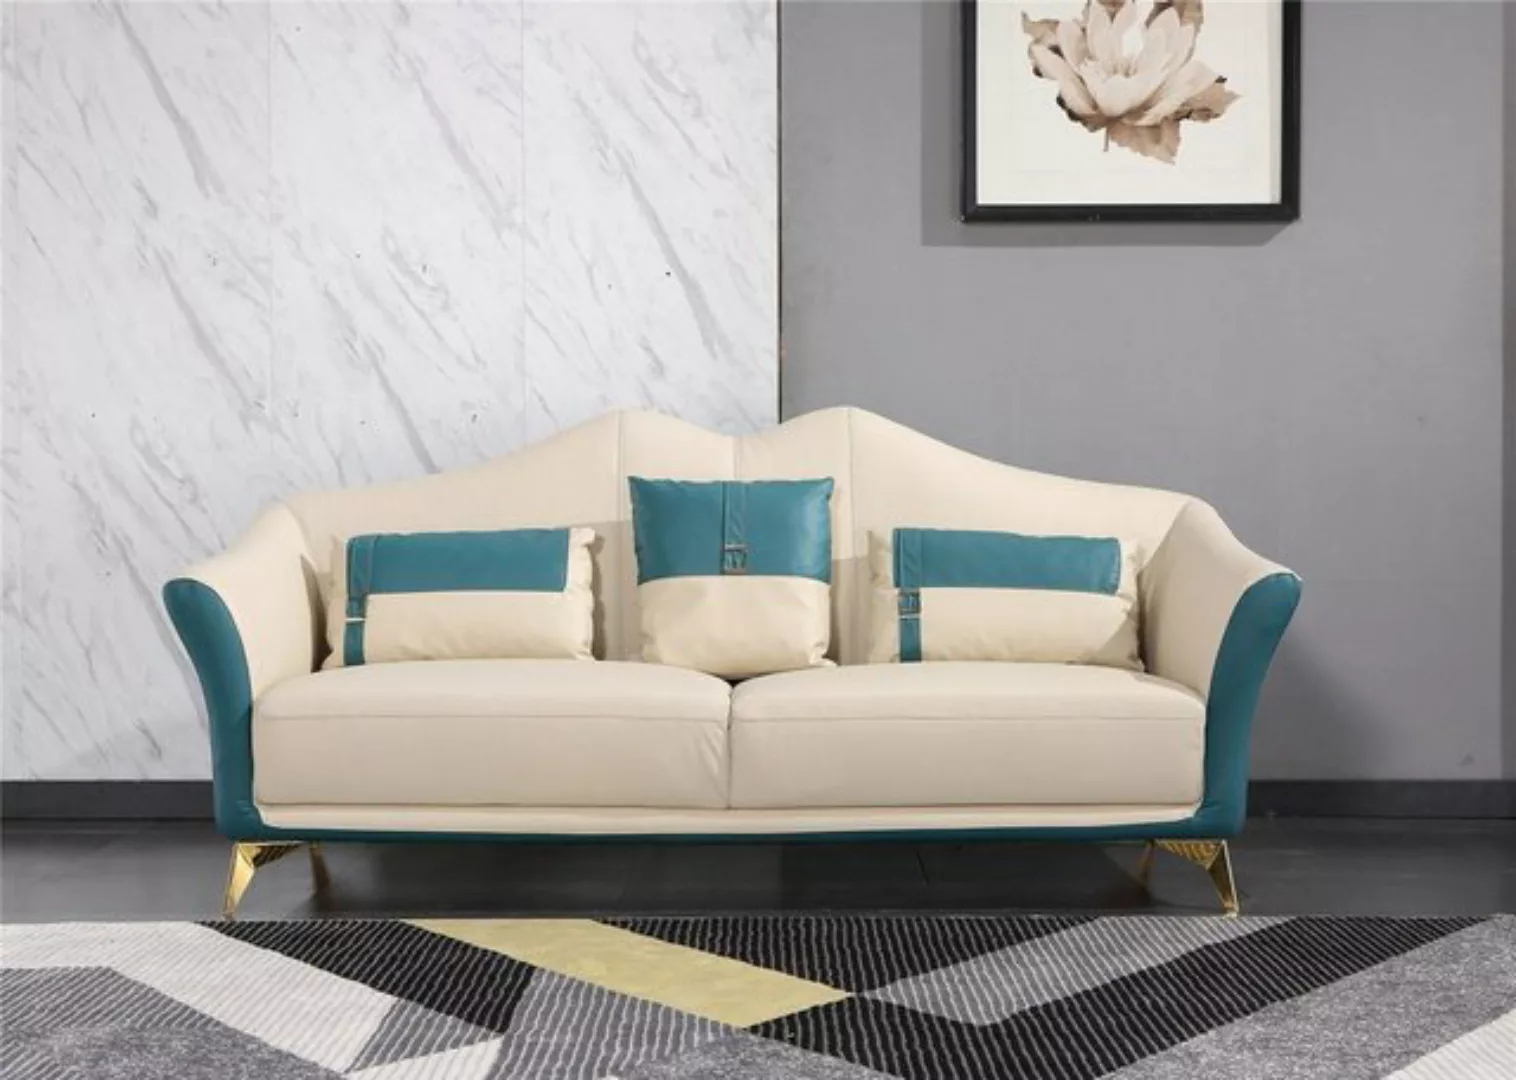 JVmoebel Sofa Orange-weiße Polster Sofagarnitur Modernes Design 3+2+1 Set, günstig online kaufen